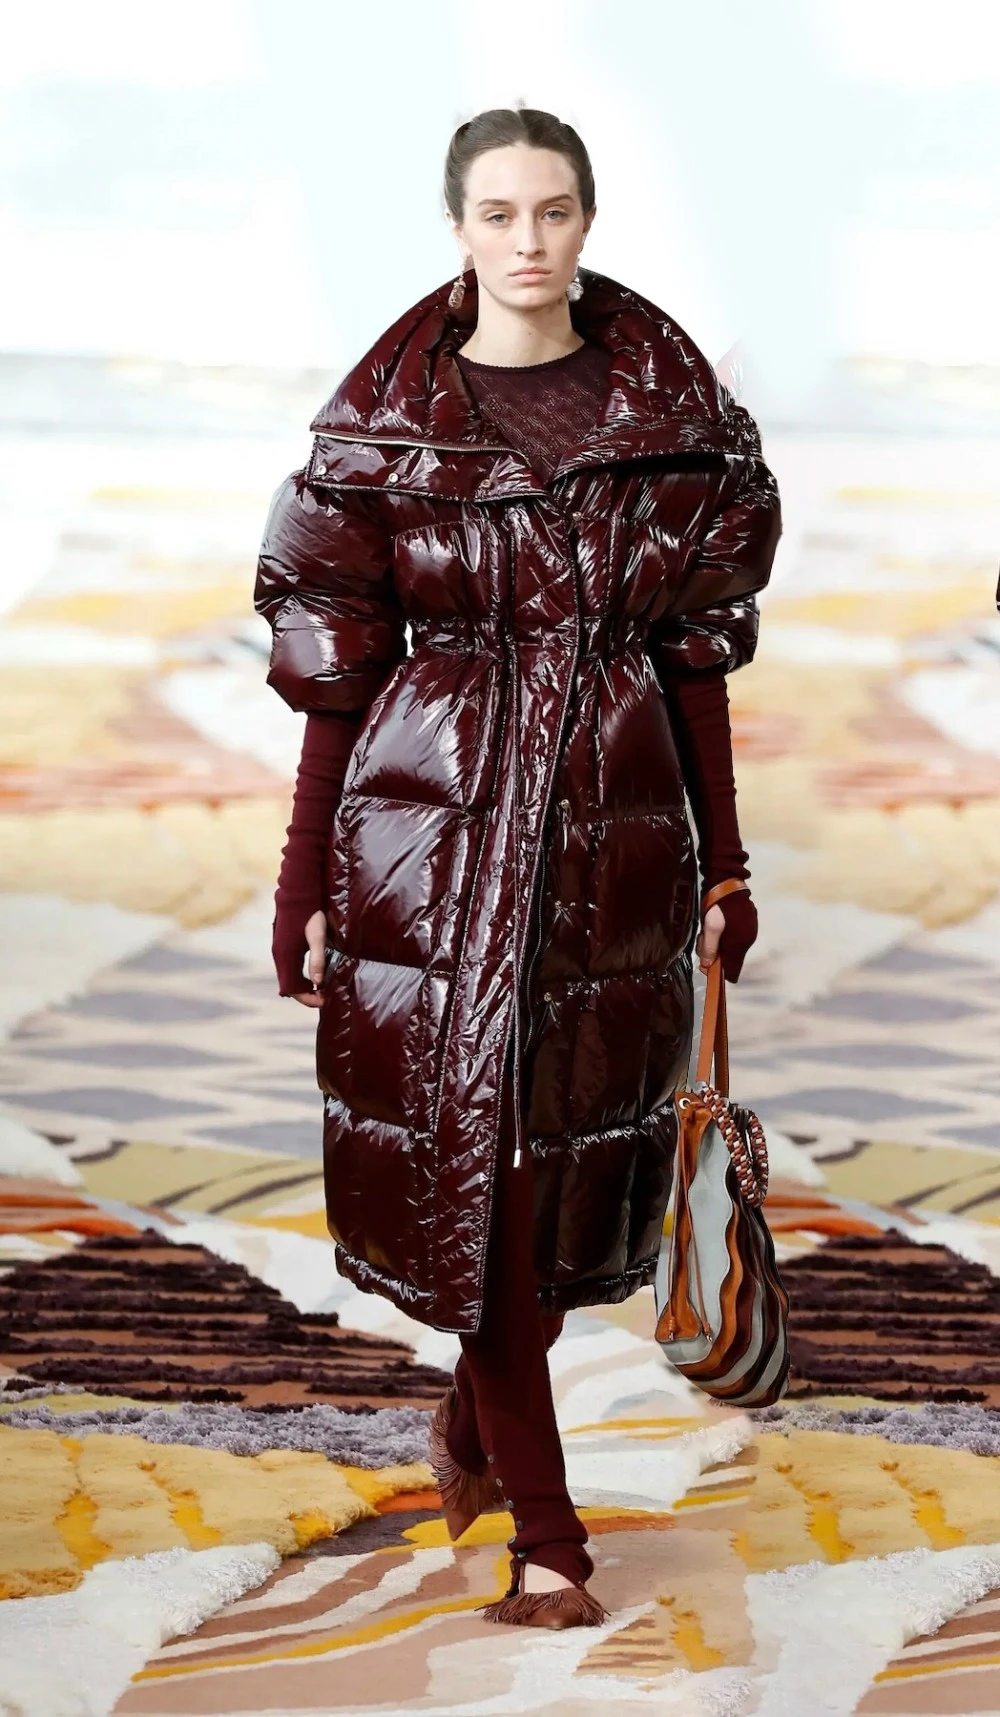 موديلات معطف للشتاء: من كاروهات إلى بالطو طويل، الخيارات كثيرة وجميلة